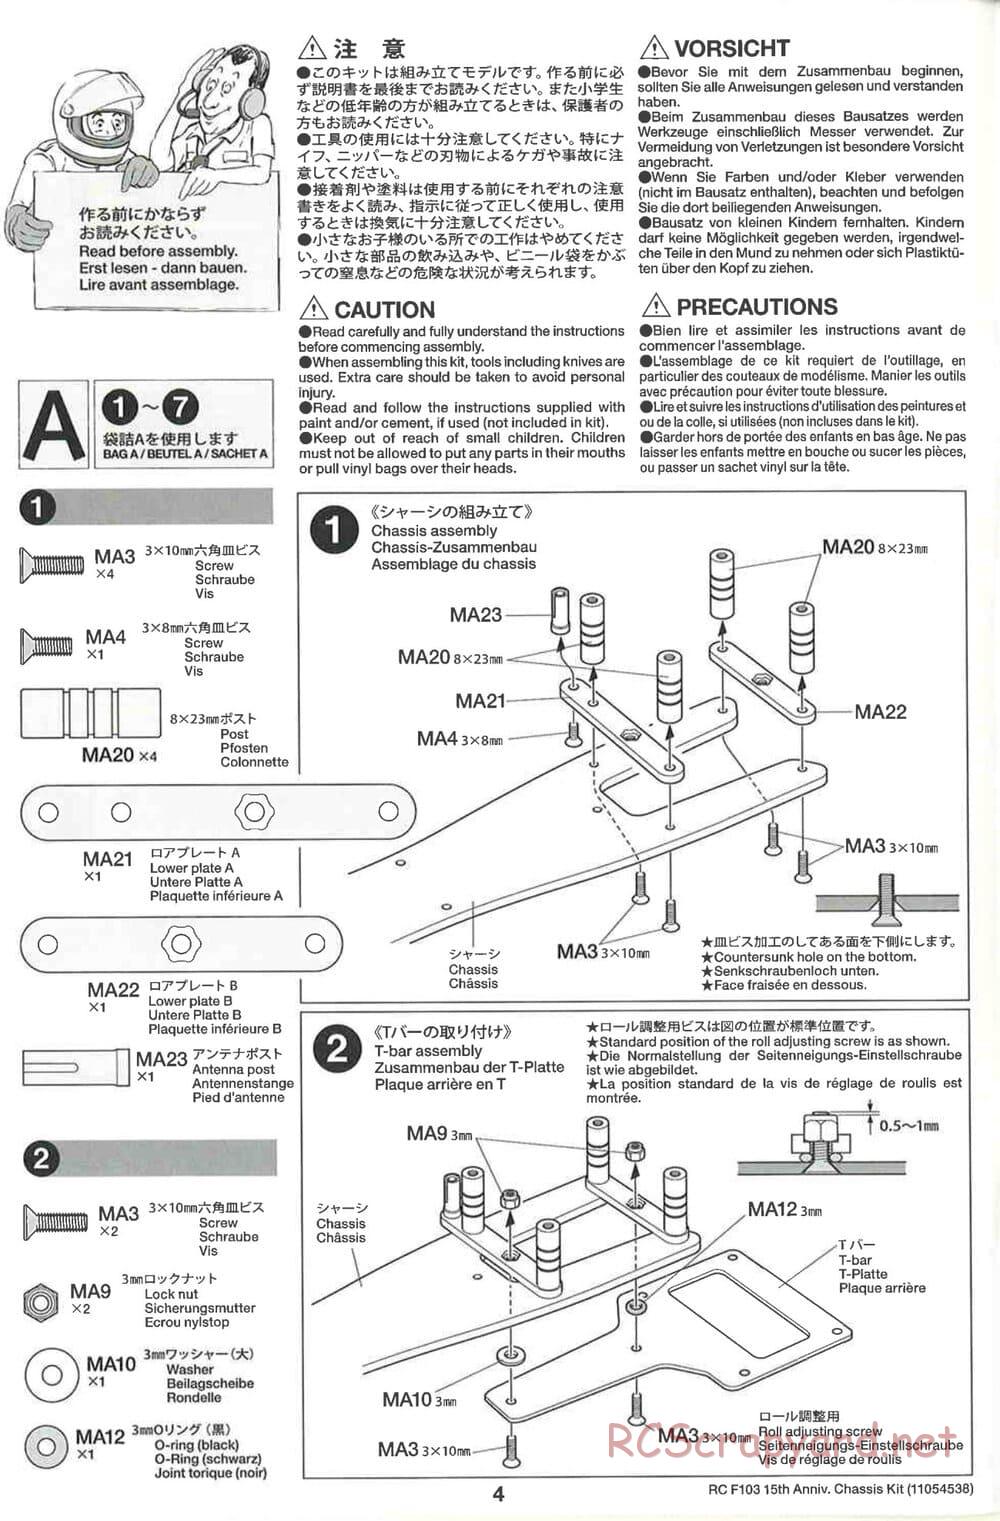 Tamiya - F103 15th Anniversary Chassis - Manual - Page 4